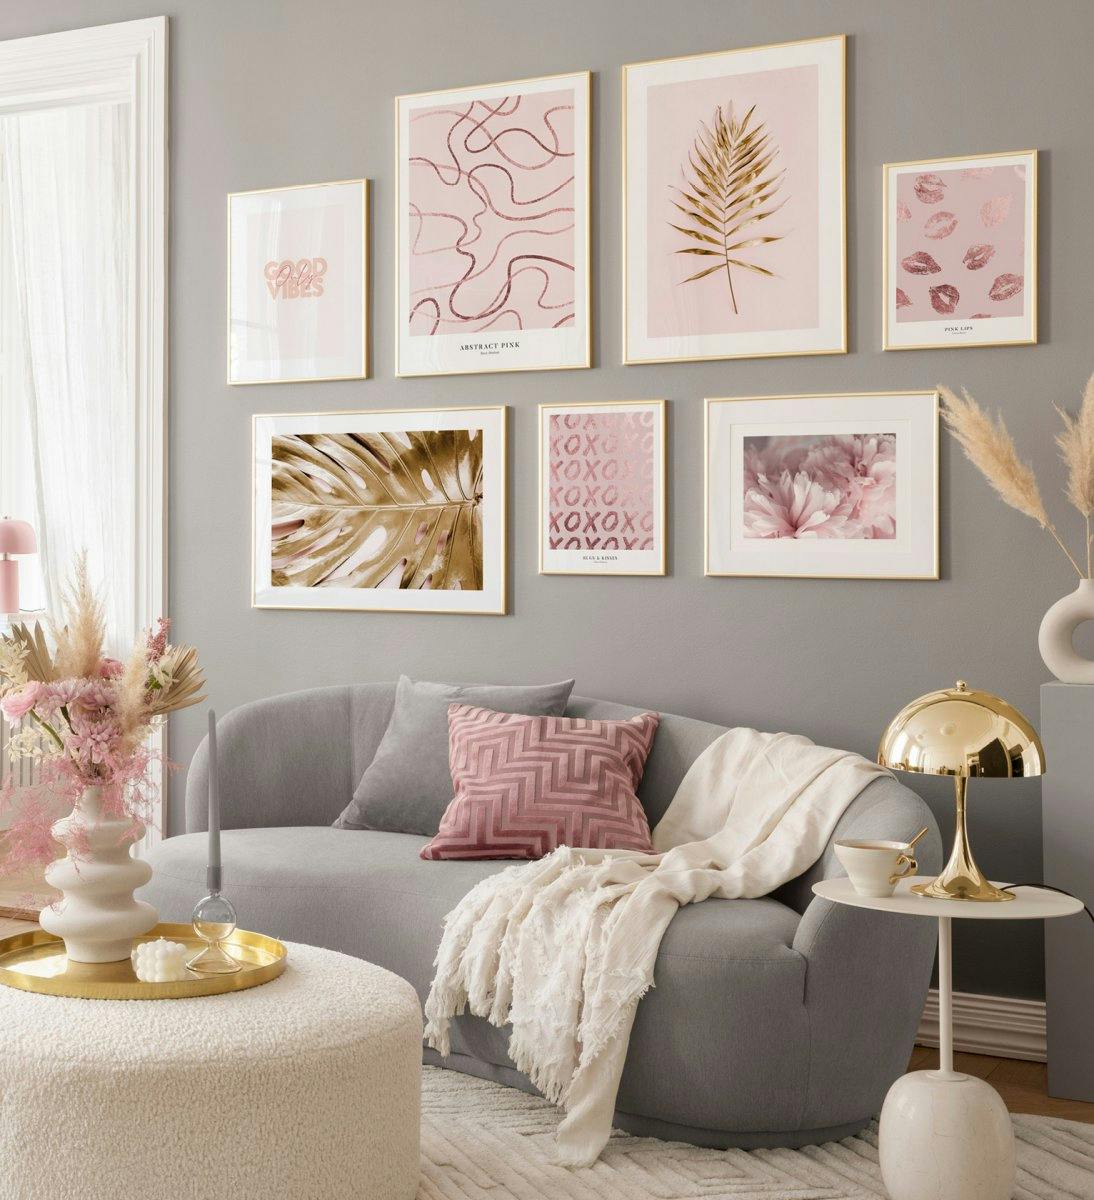 Décoration murale rose affiches abstraites de line art et feuilles dorées avec des cadres dorés pour le salon